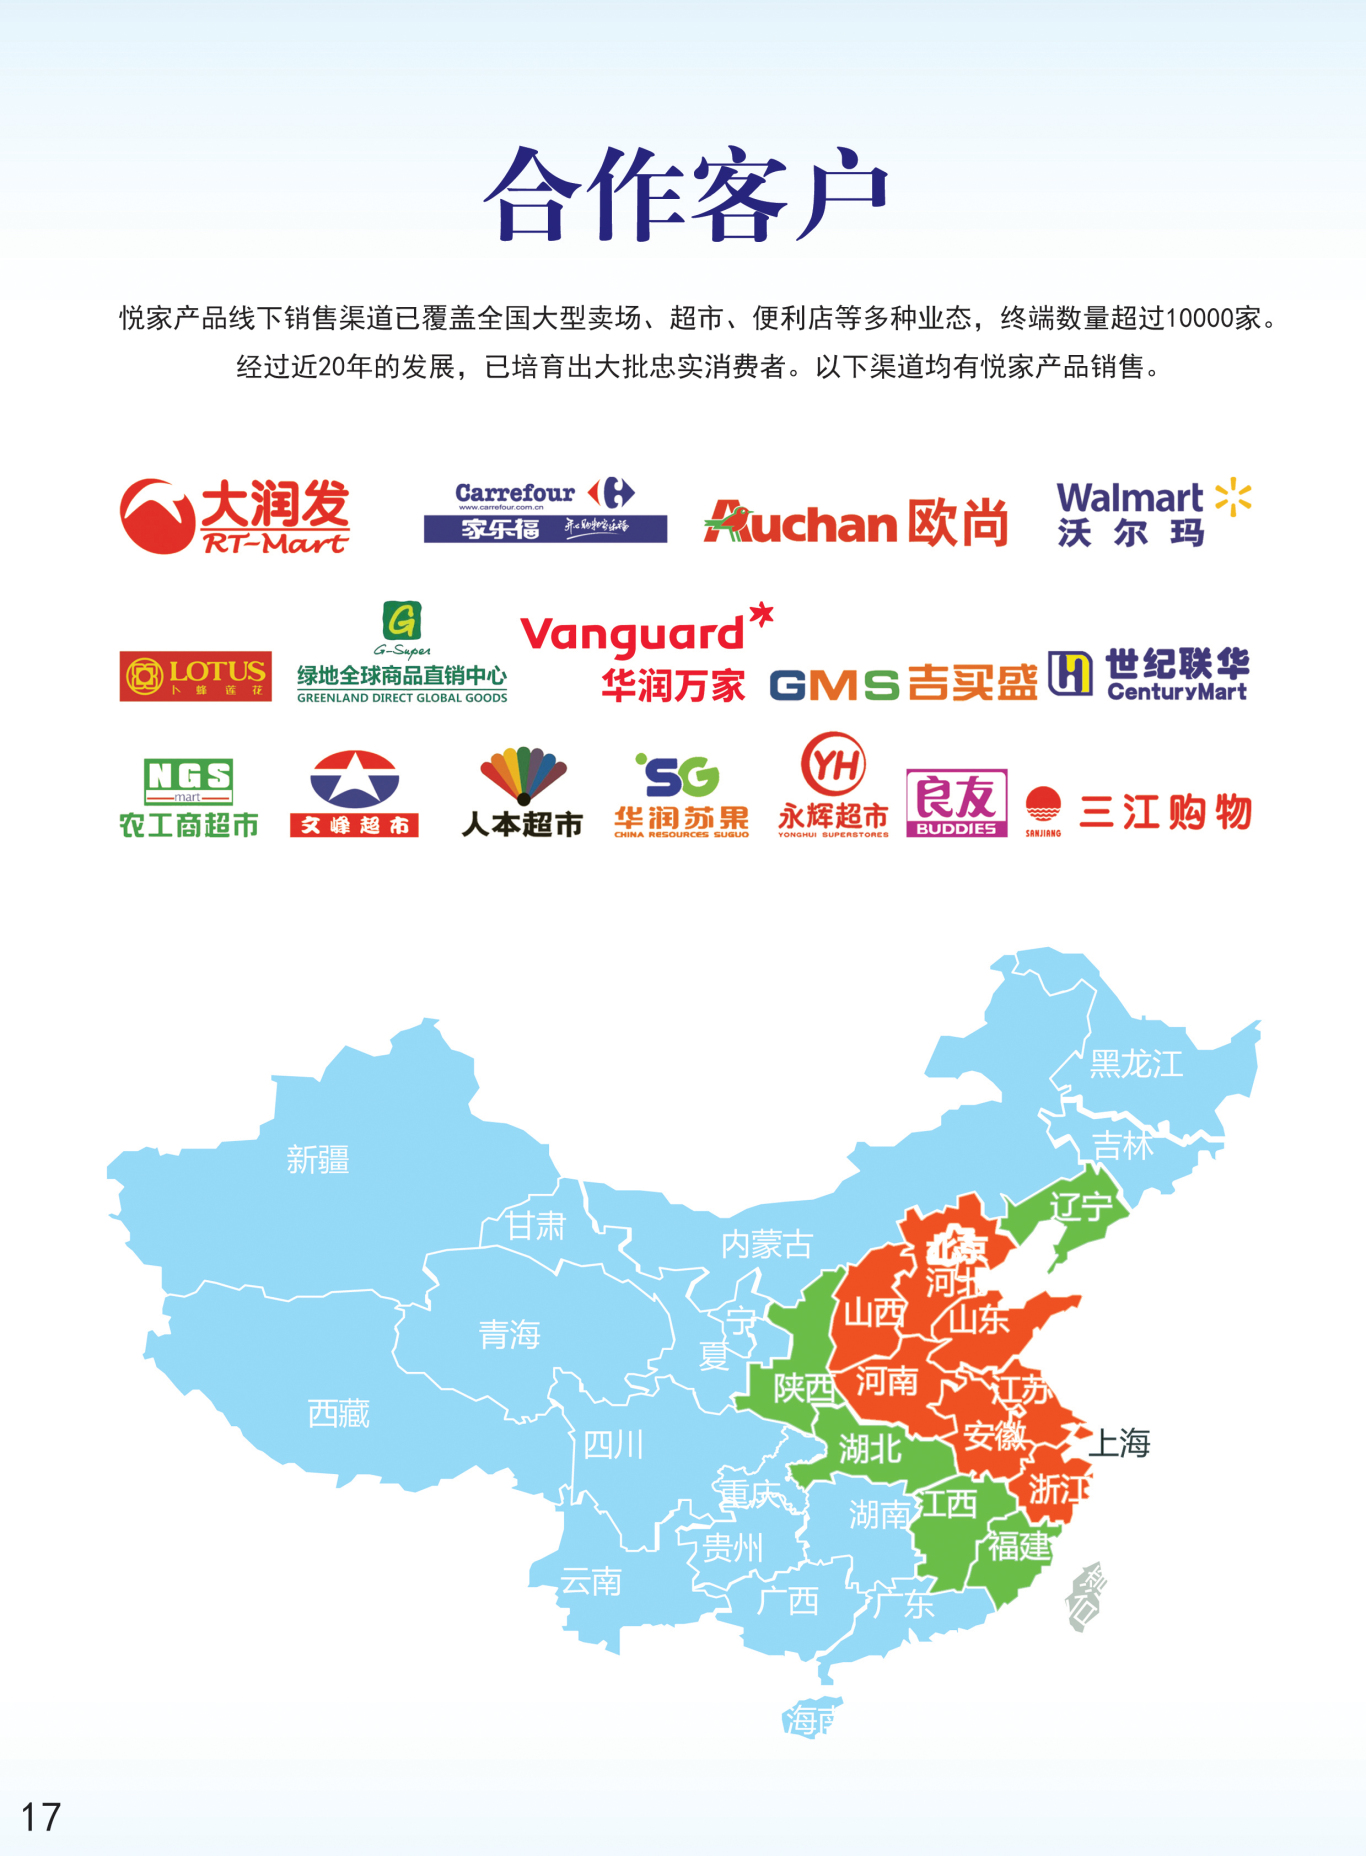 上海悦家食品产品手册图15